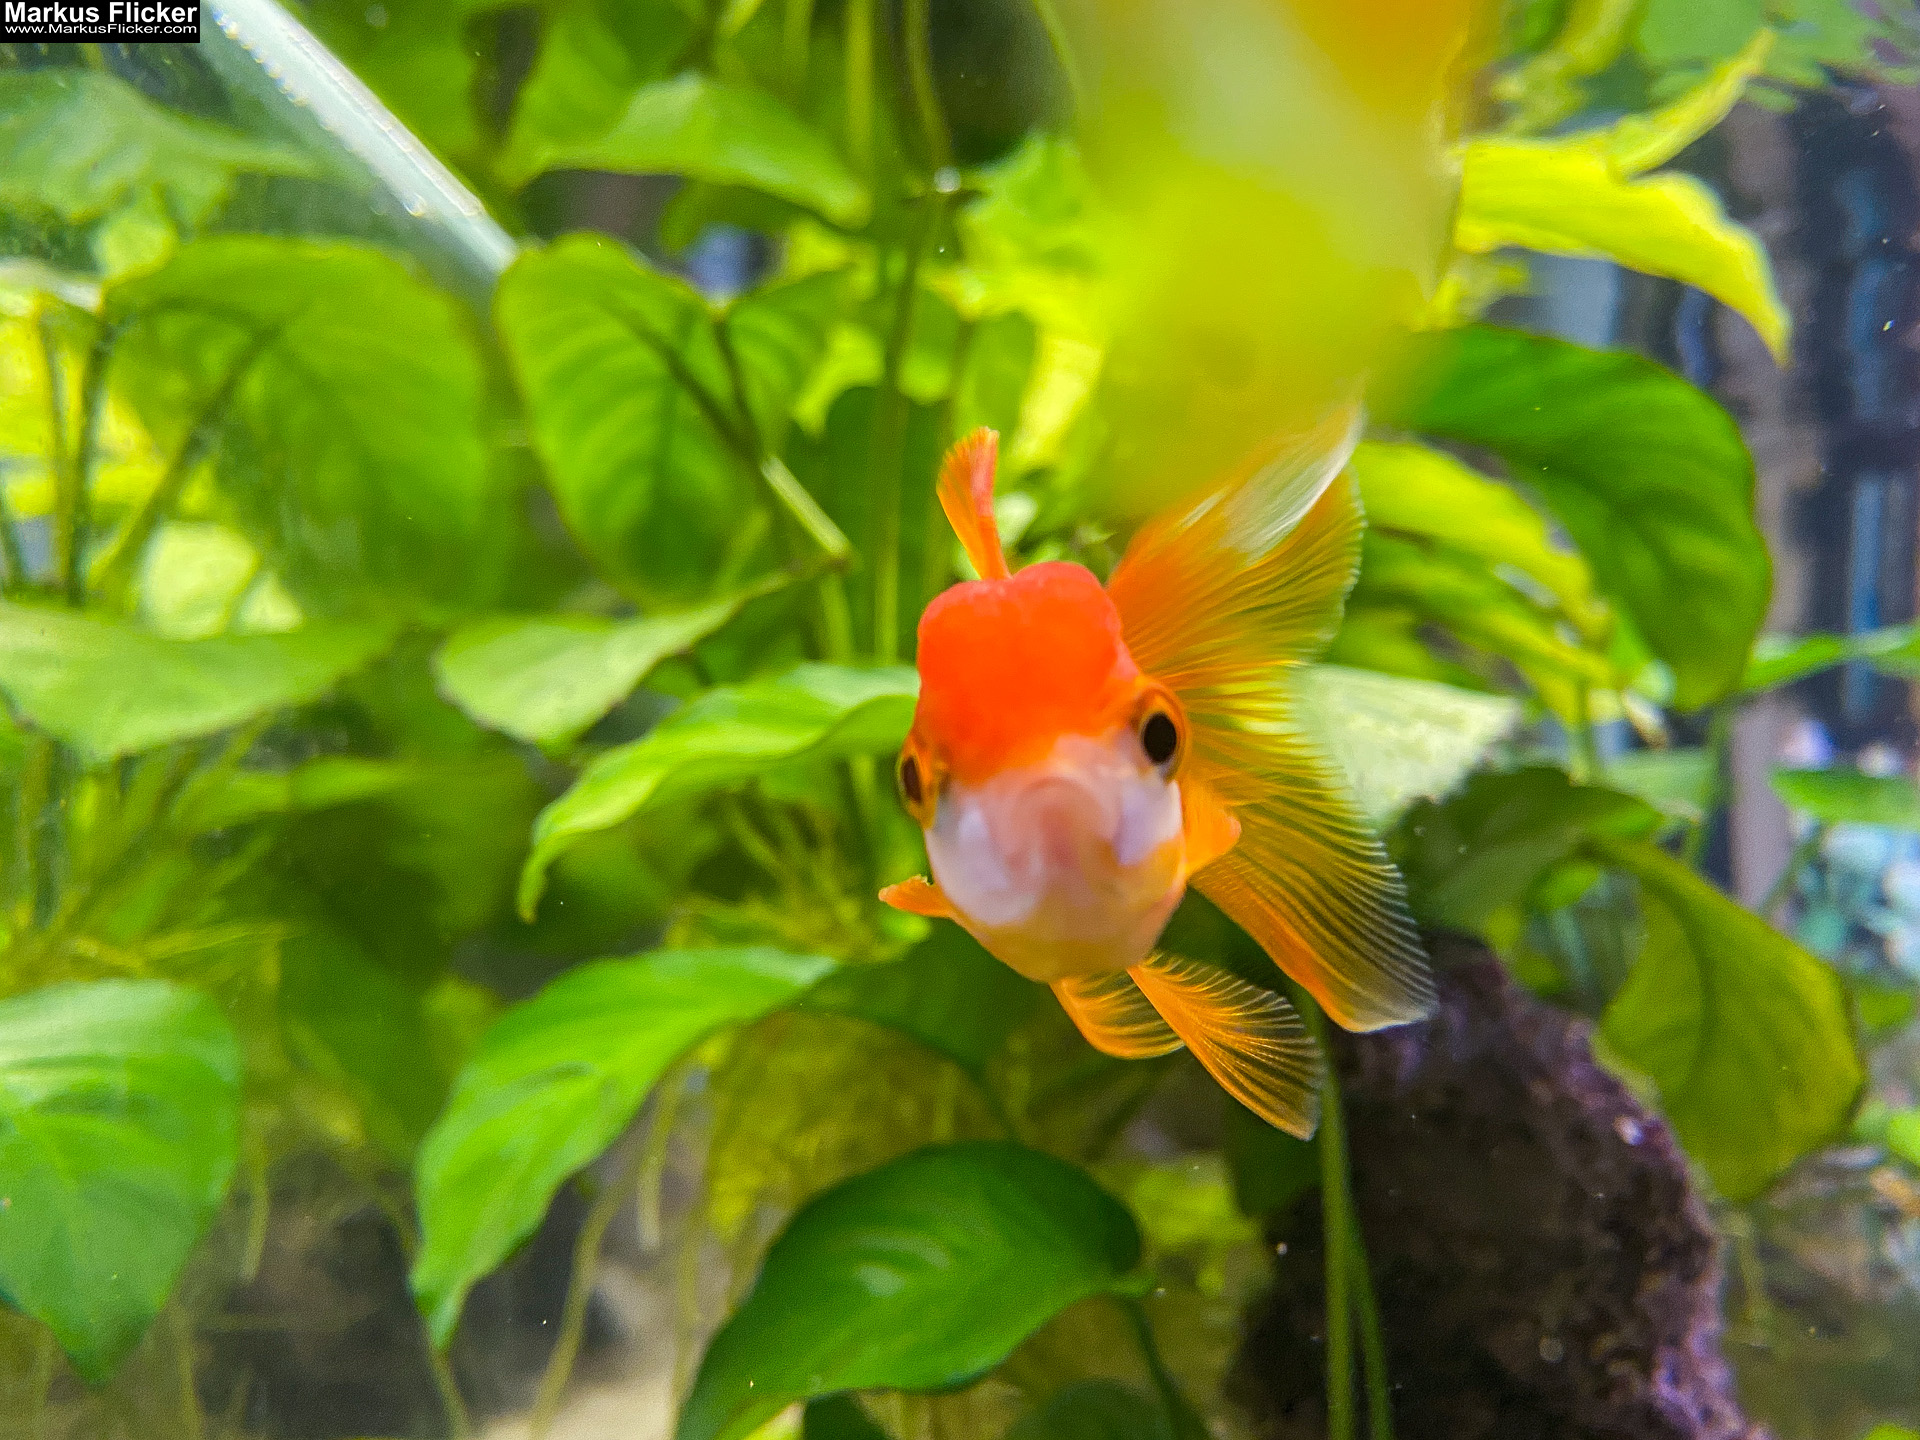 Fische im Aquarium durch Glas fotografieren Tipps mit dem Smartphone durch Glasscheibe